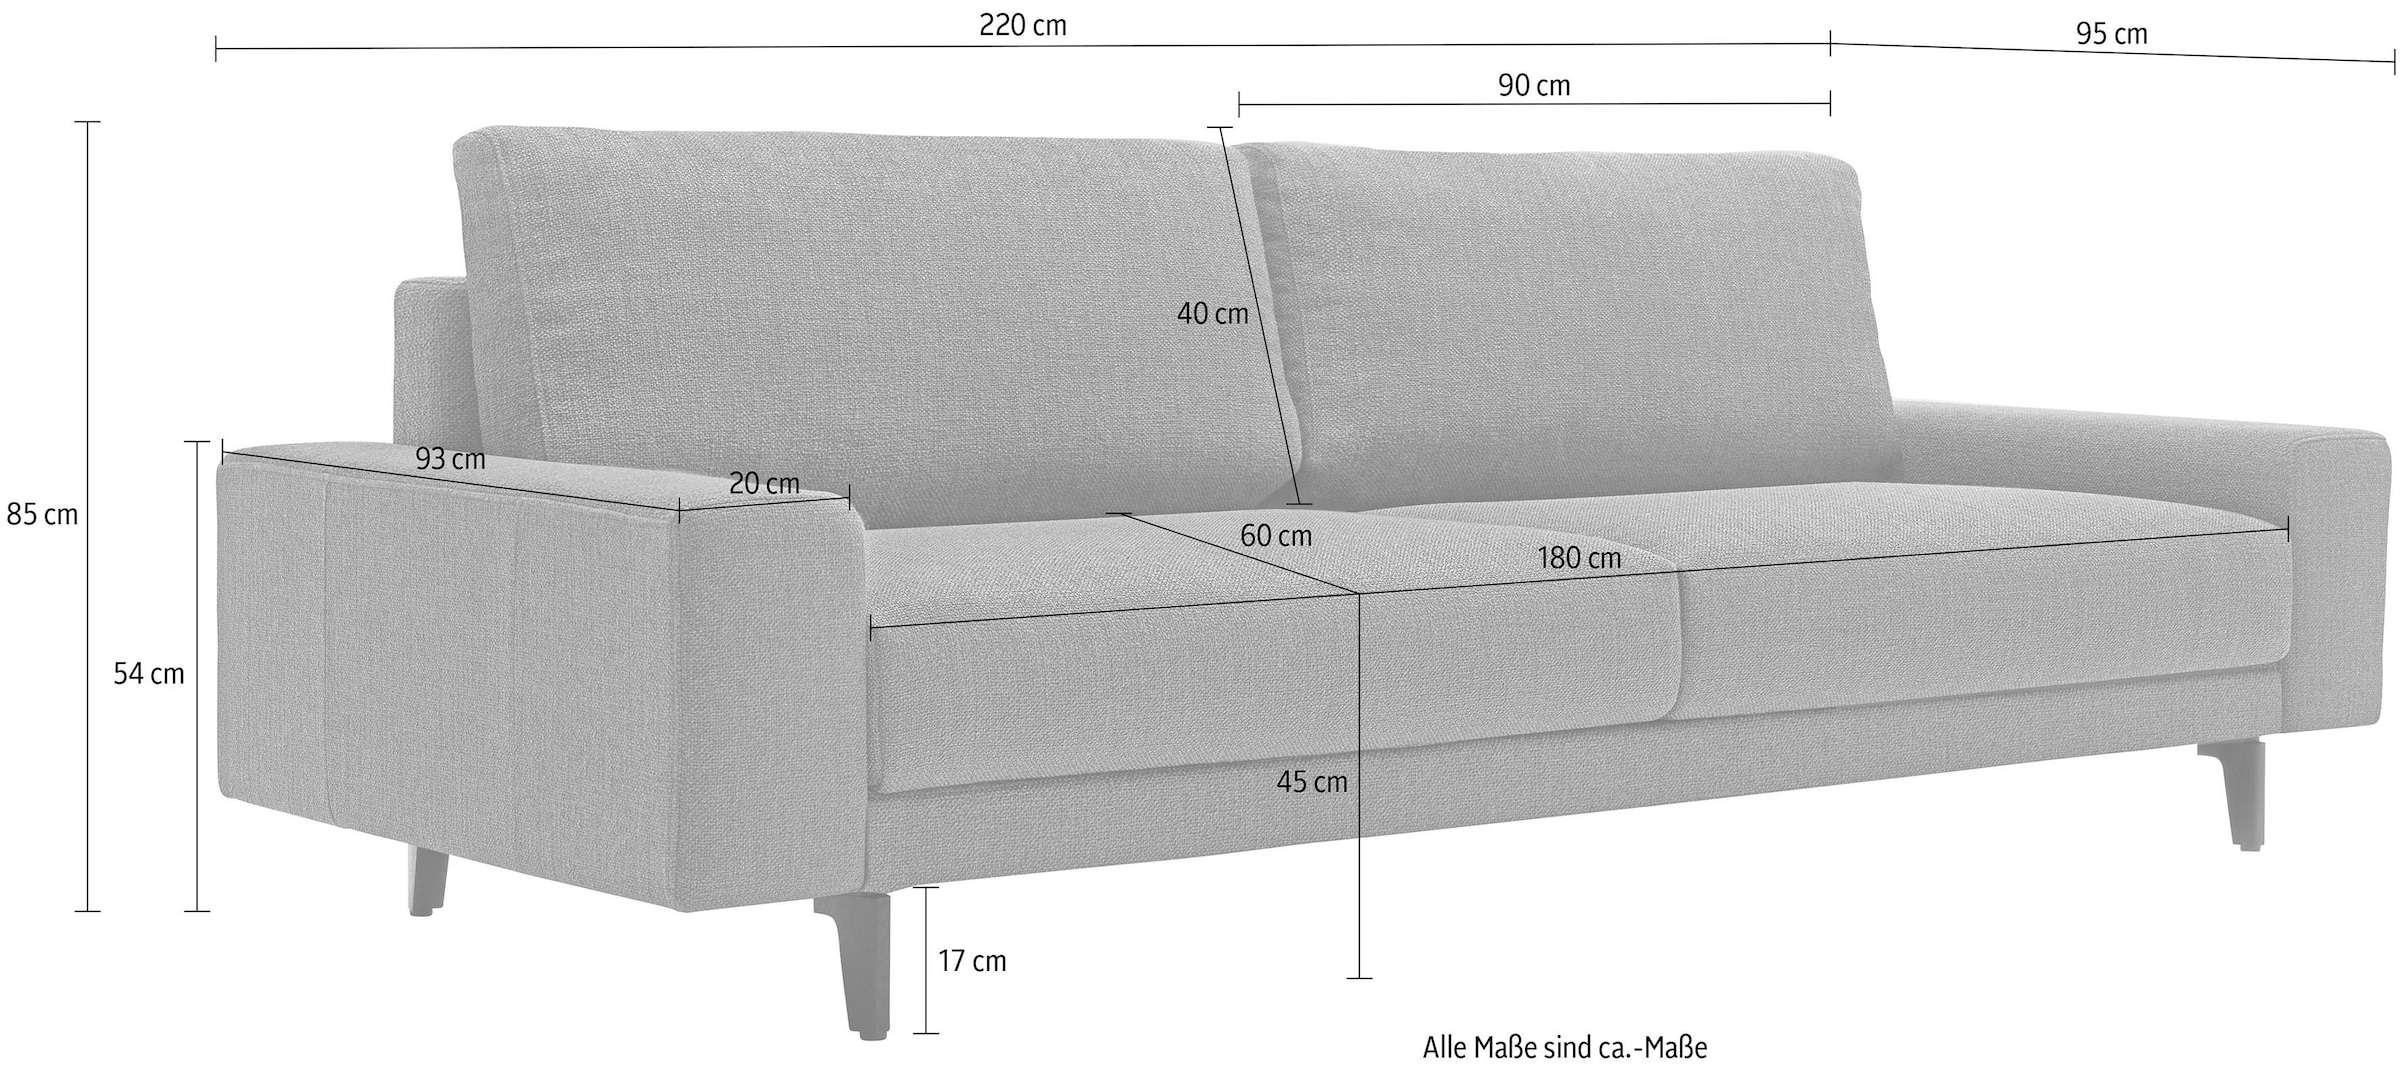 220 Breite 3-Sitzer »hs.450«, online niedrig, hülsta kaufen breit umbragrau, in sofa cm Armlehne Alugussfüße